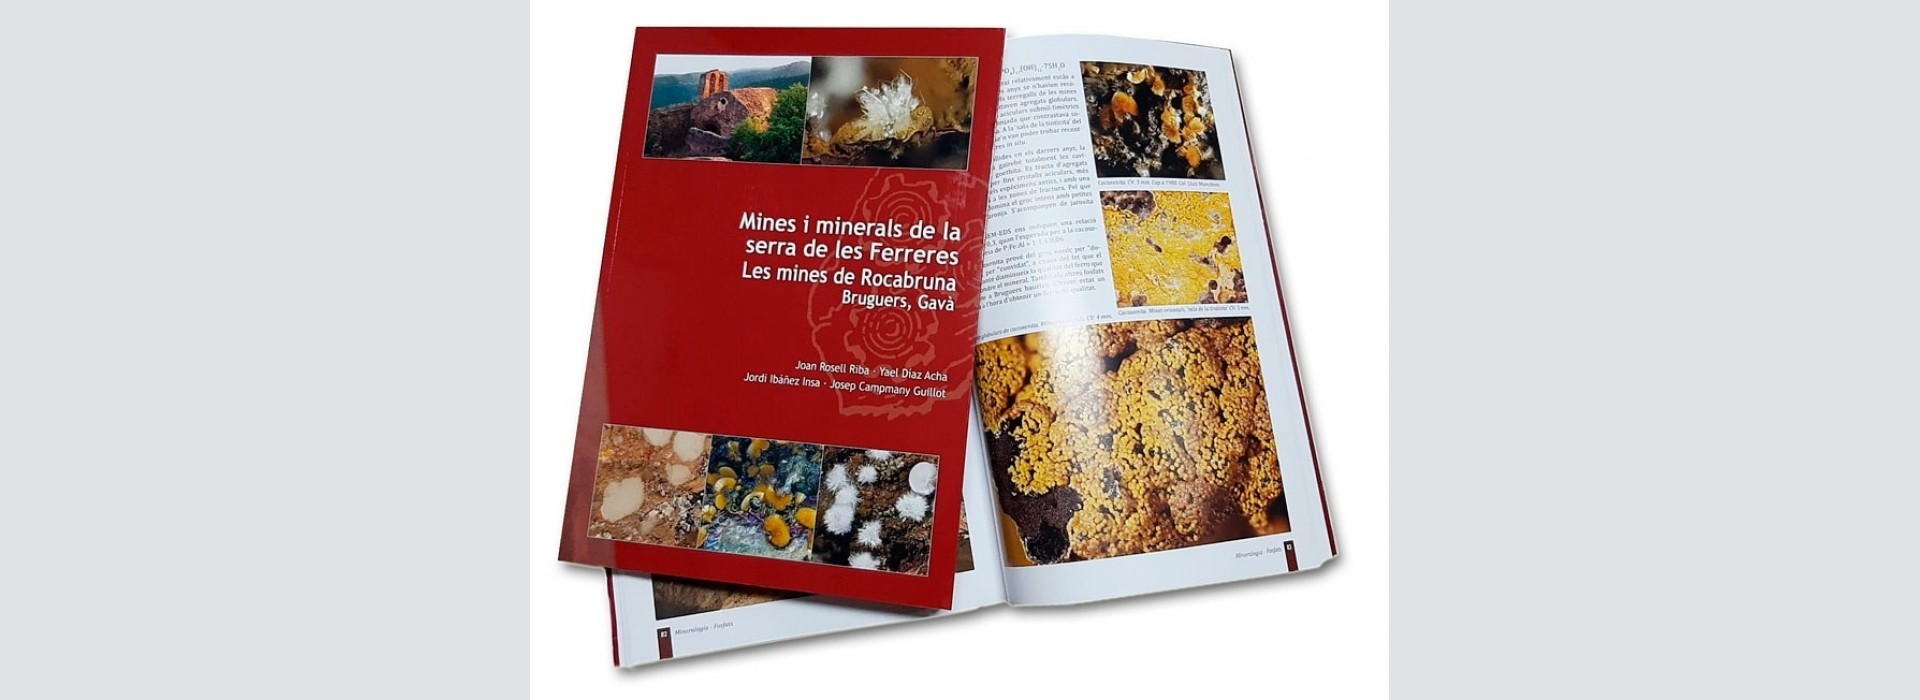 Nuevo libro: Mines i minerals de la serra de les Ferreres. Les mines de Rocabruna, Bruguers, Gavà